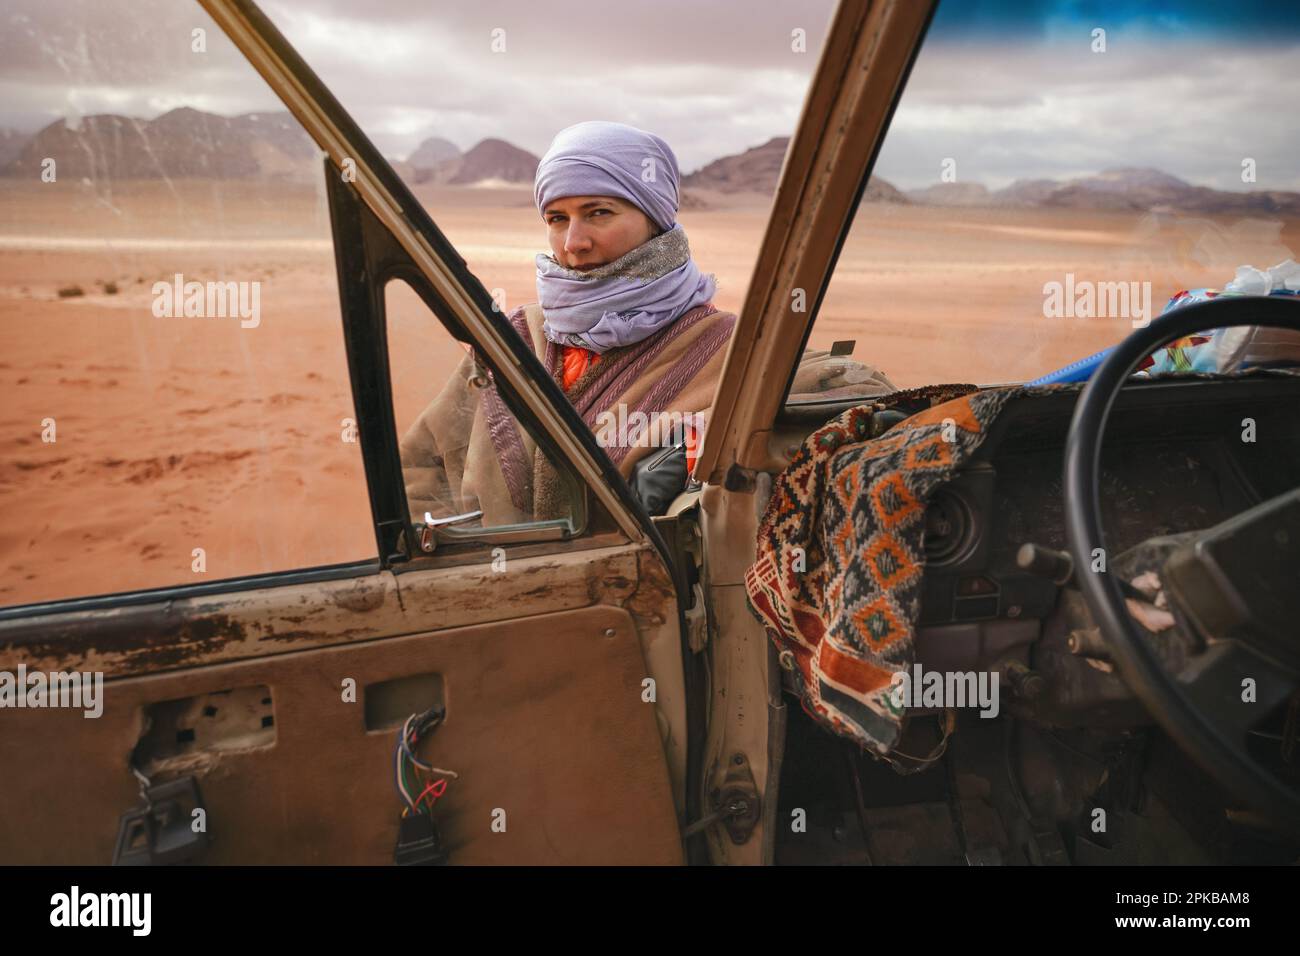 Jeune femme en manteau bédouin traditionnel - bisht - et foulard, posant à côté de l'ancien véhicule 4WD, regardant par-dessus la porte ouverte - paysage désertique de Wadi R Banque D'Images